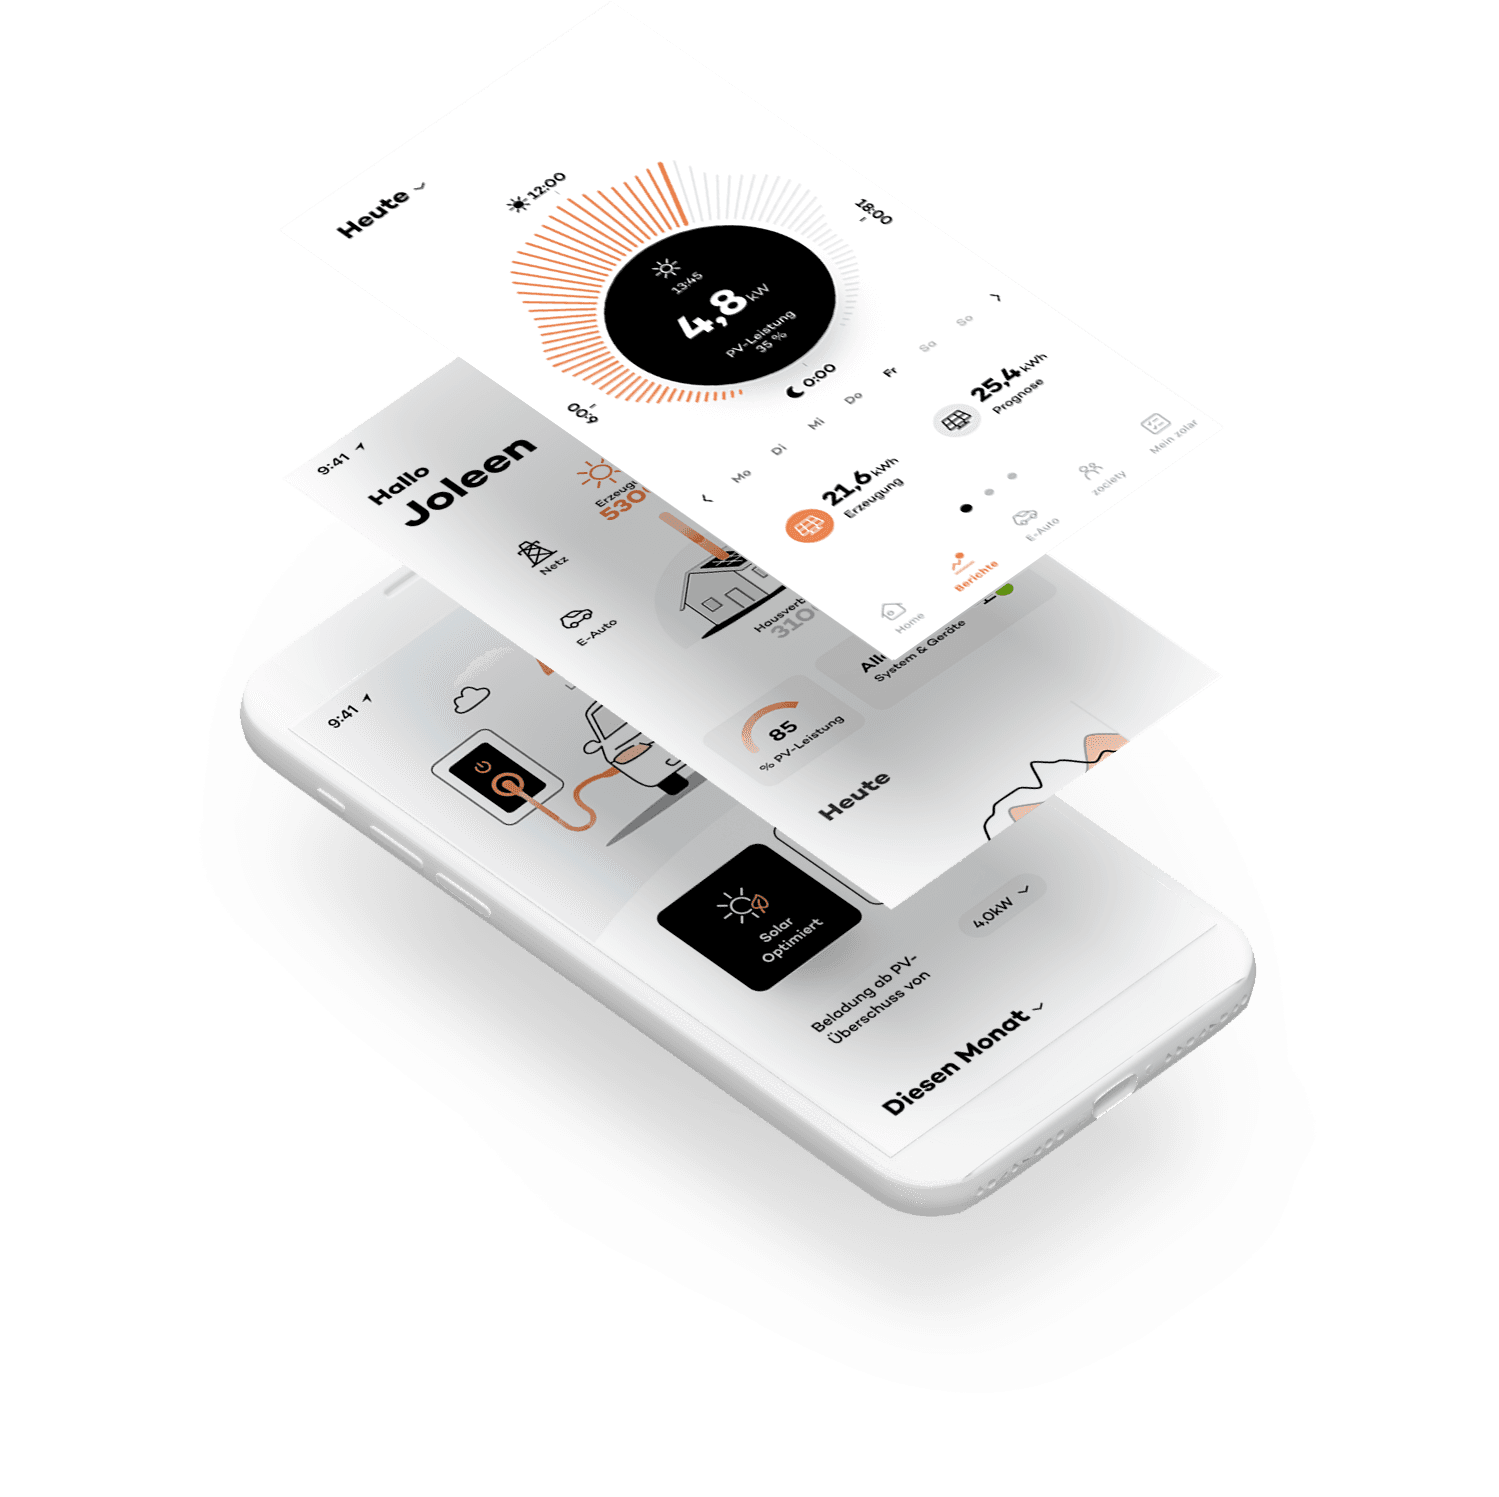 Der zolar Compass – mit unserer App alle wichtigen Schritte im Blick